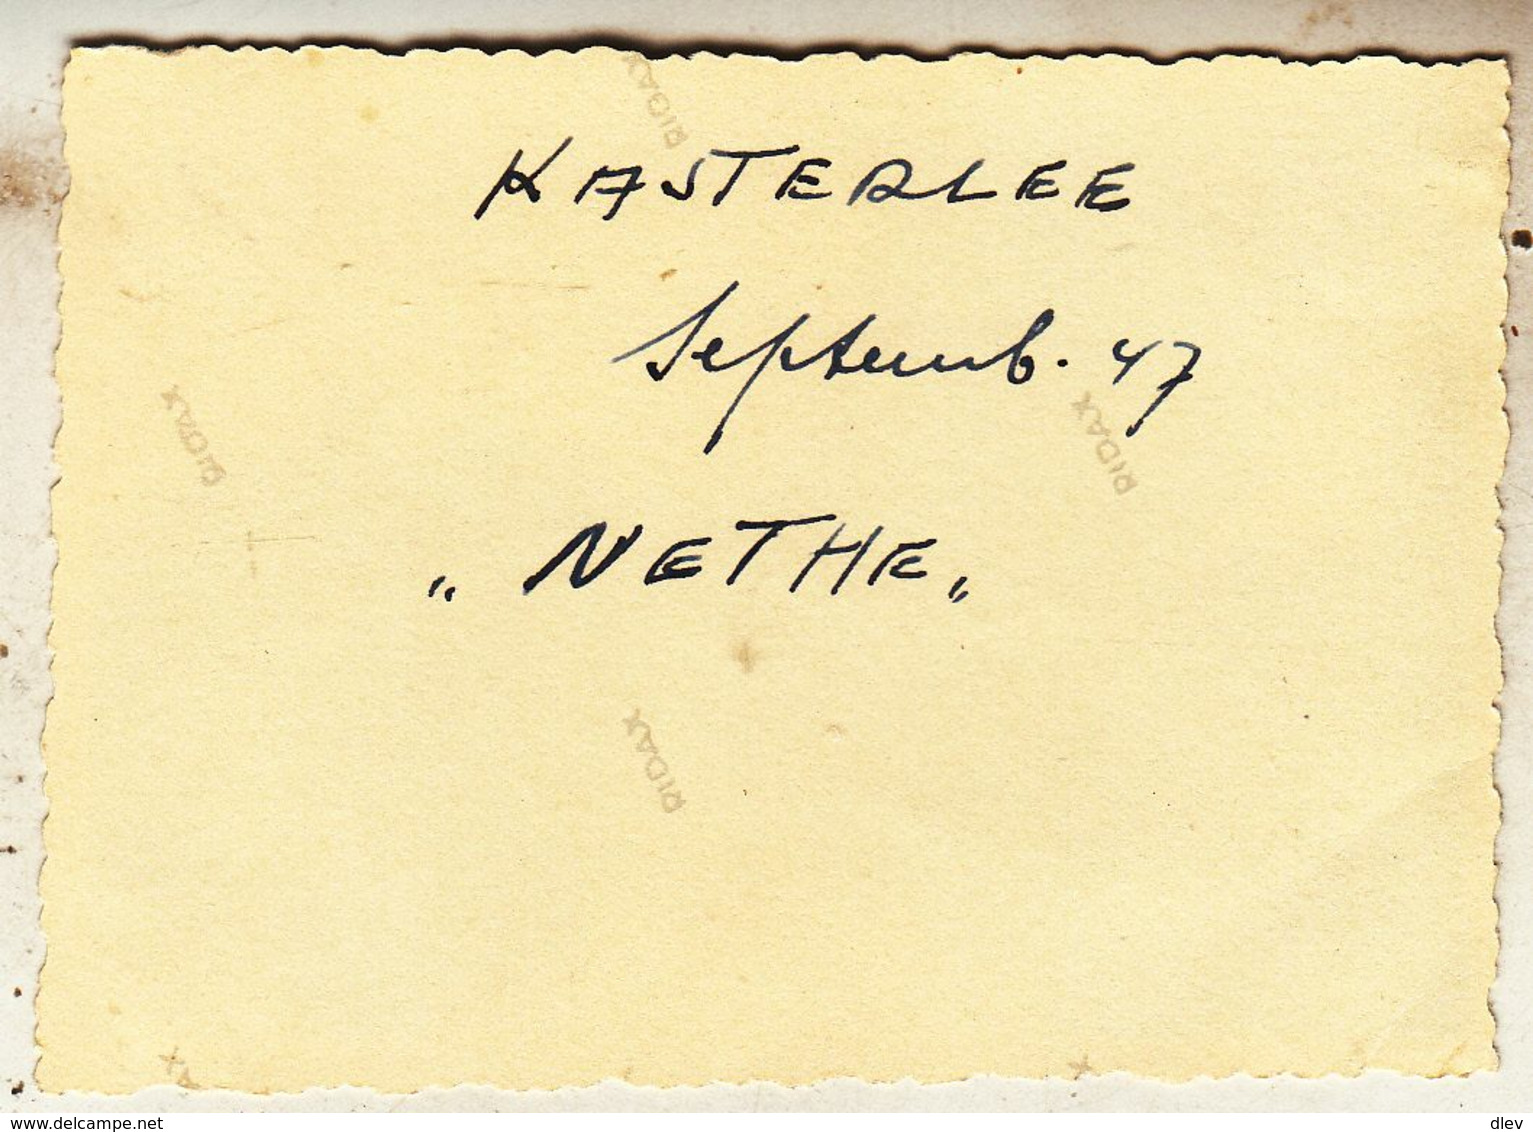 Kasterlee - De Nethe - September 47 - Foto 6 X 8.5 Cm - Plaatsen